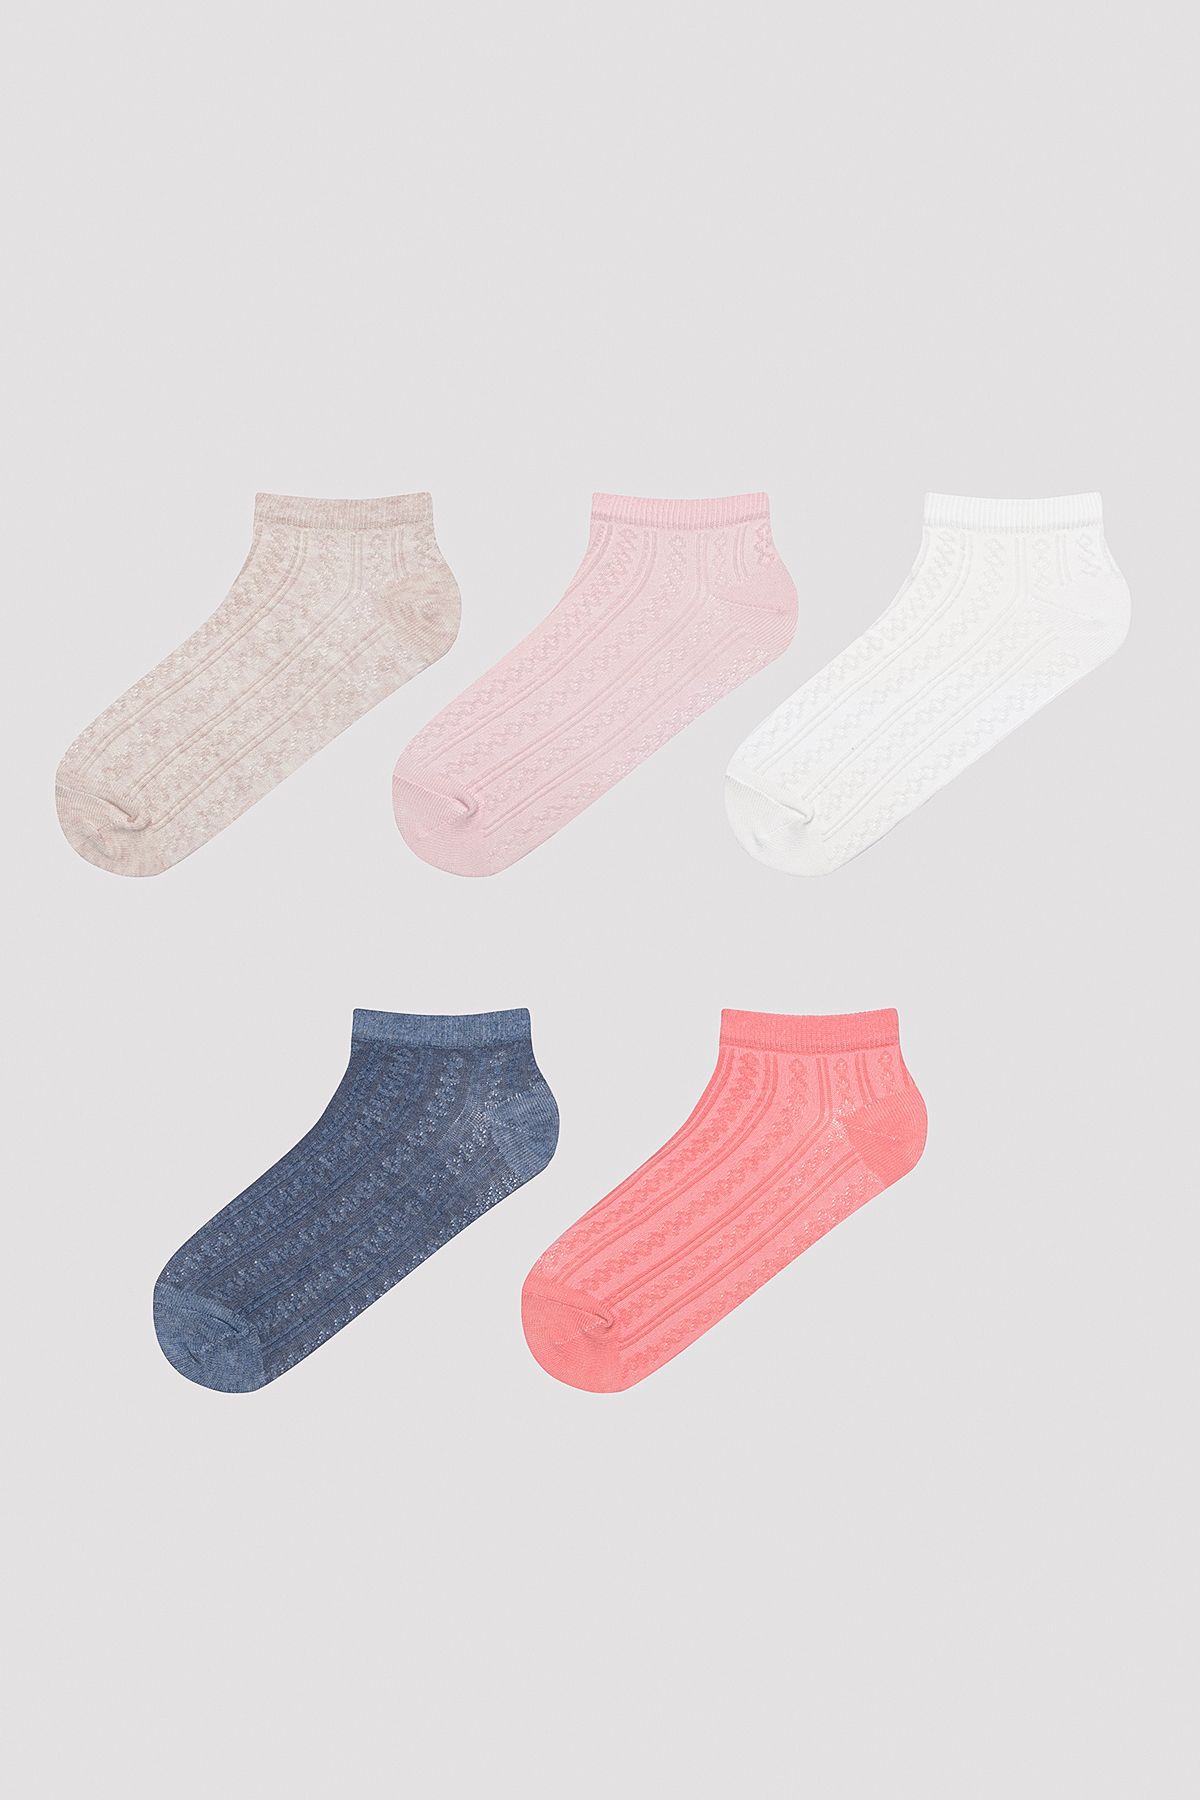 Penti Colorful Jacquard Pembe 5li Patik Çorap